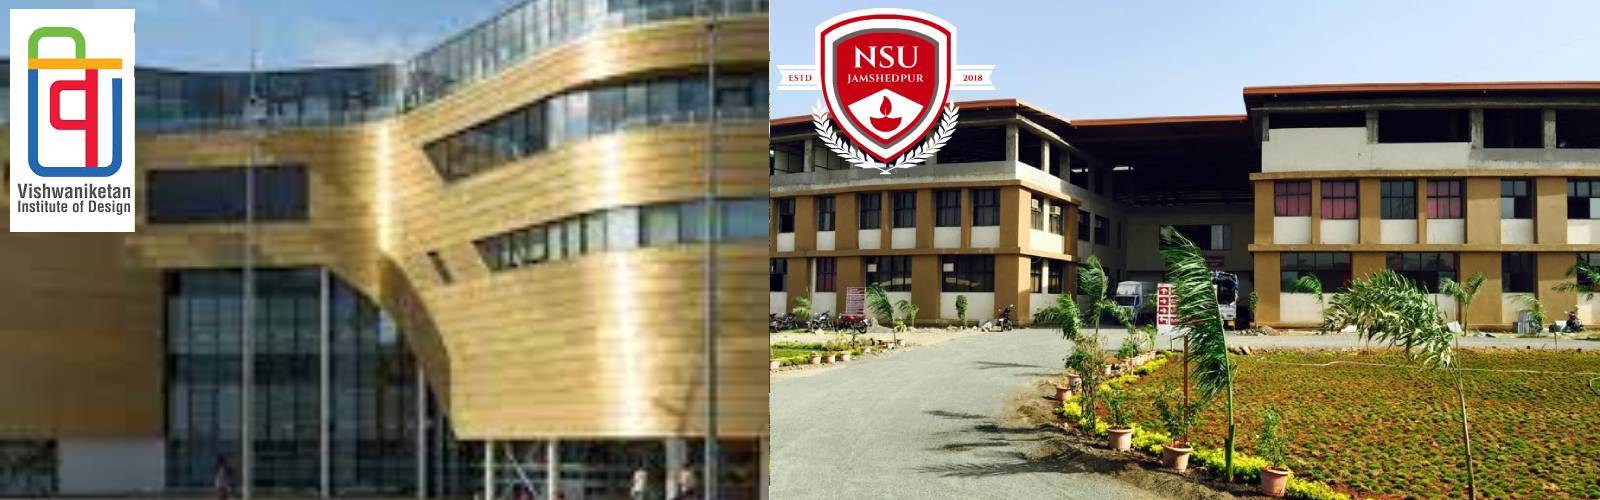 NSU university